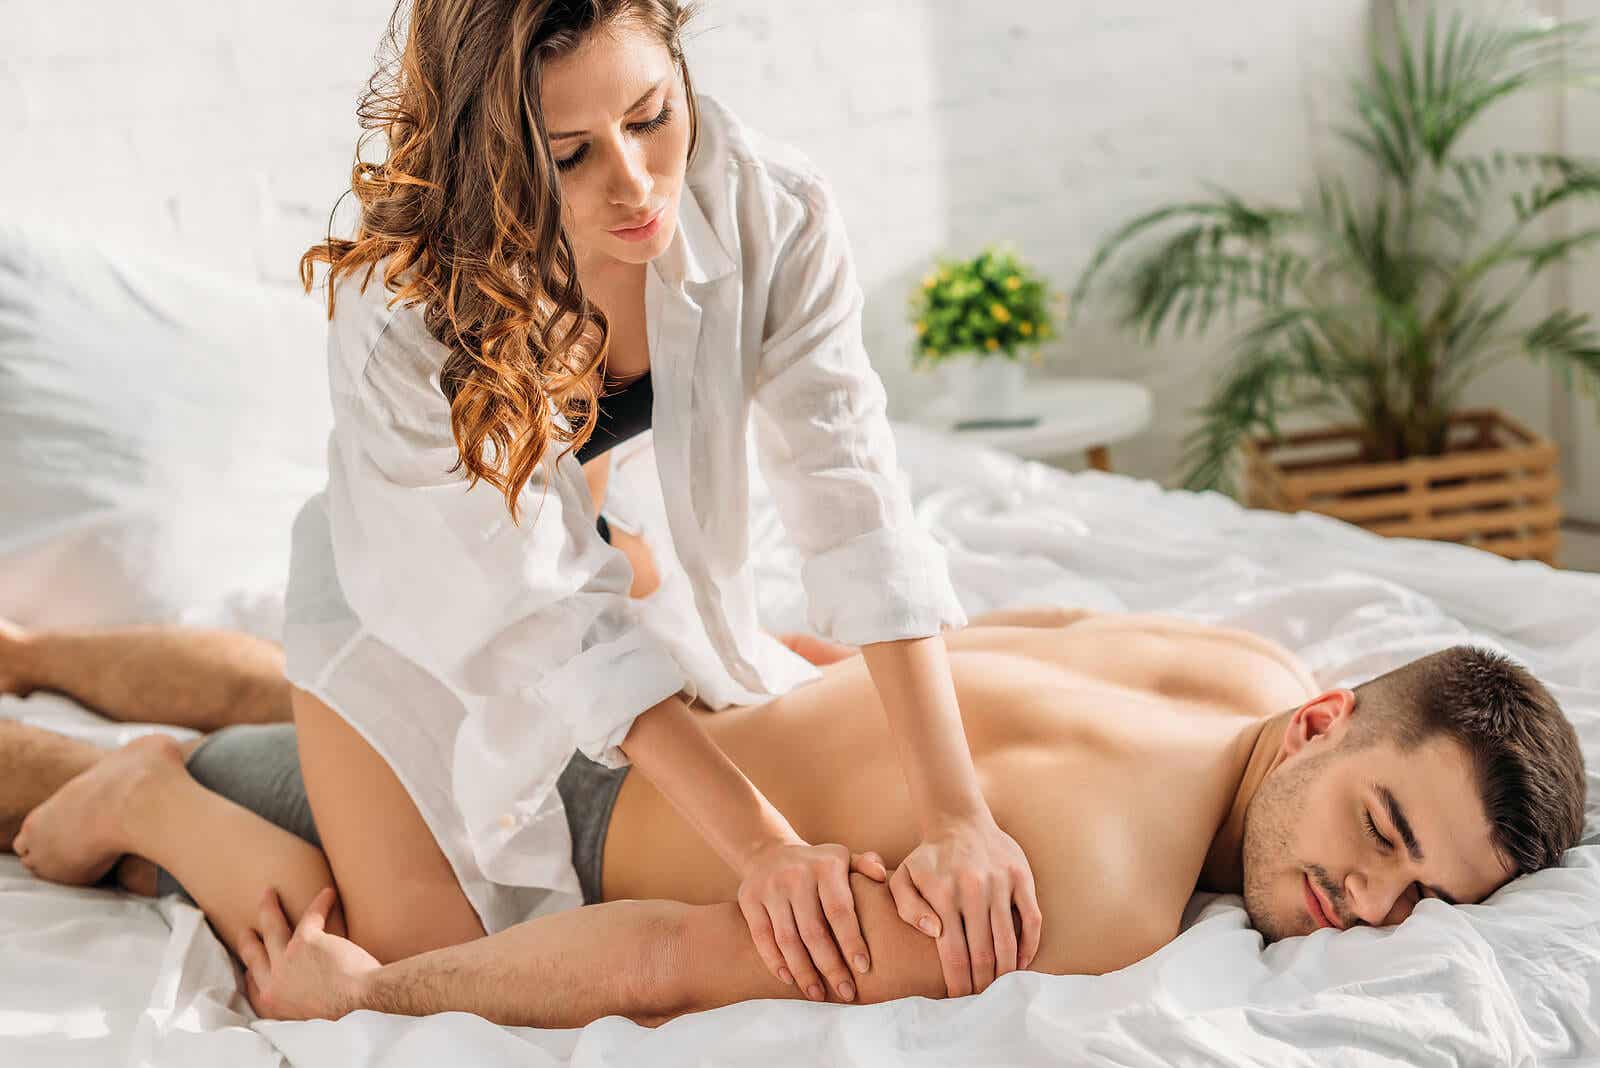 Massage érotique : une expérience à vivre en couple.